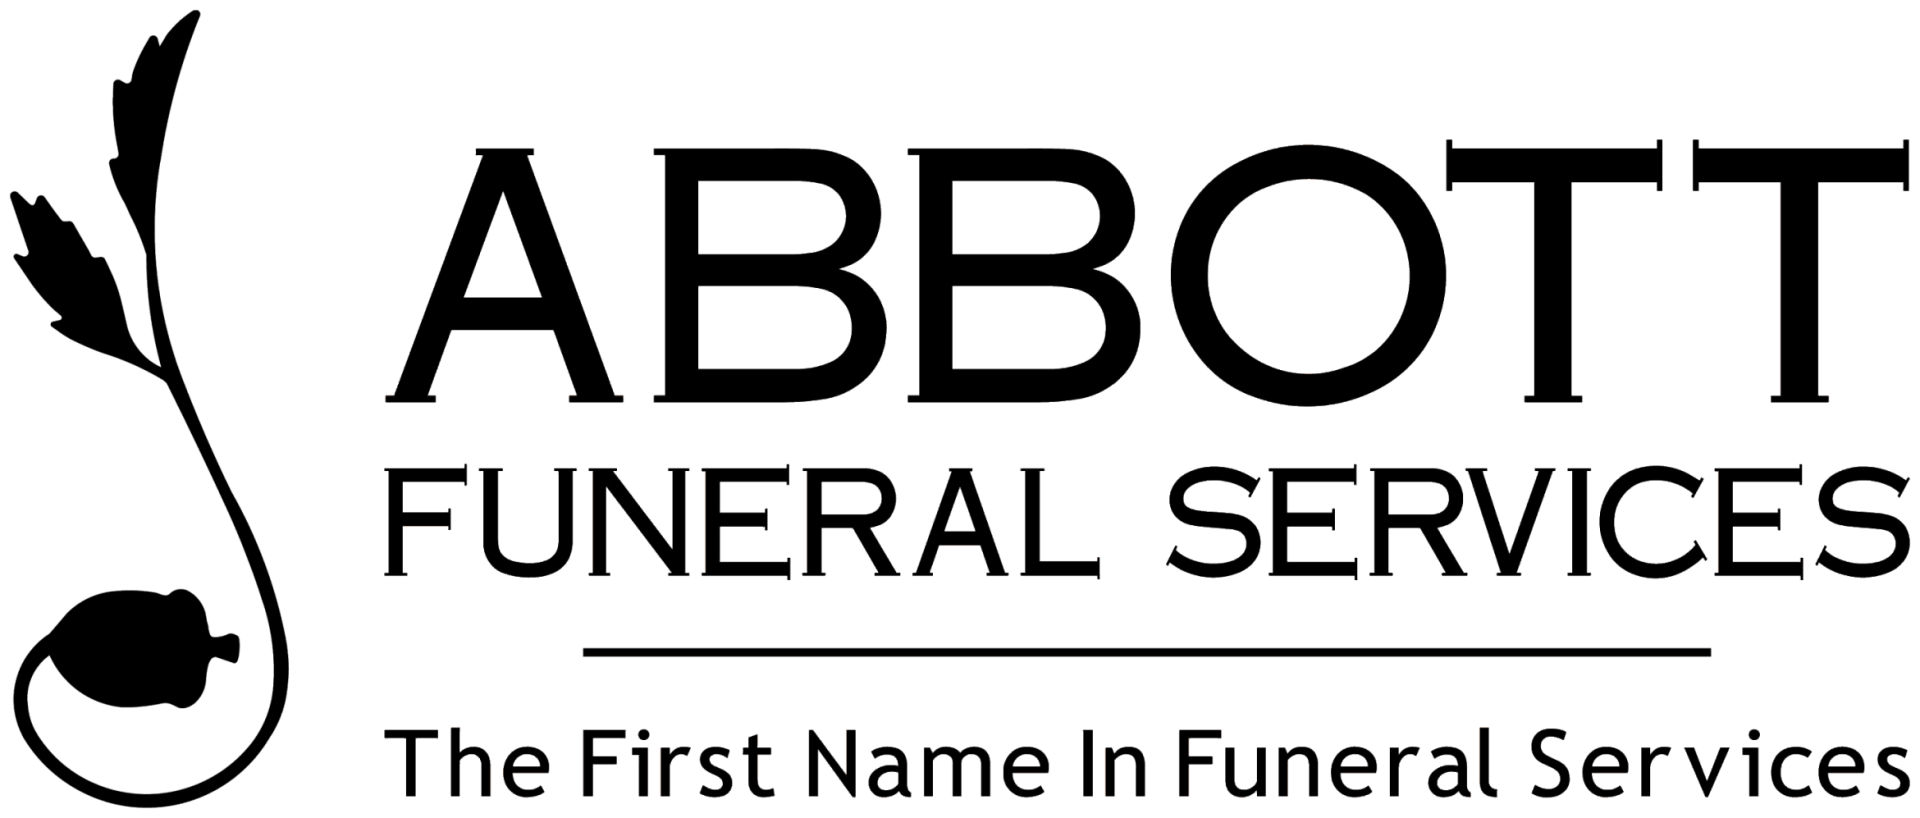 Abbott Funeral Services in Aurora Logo